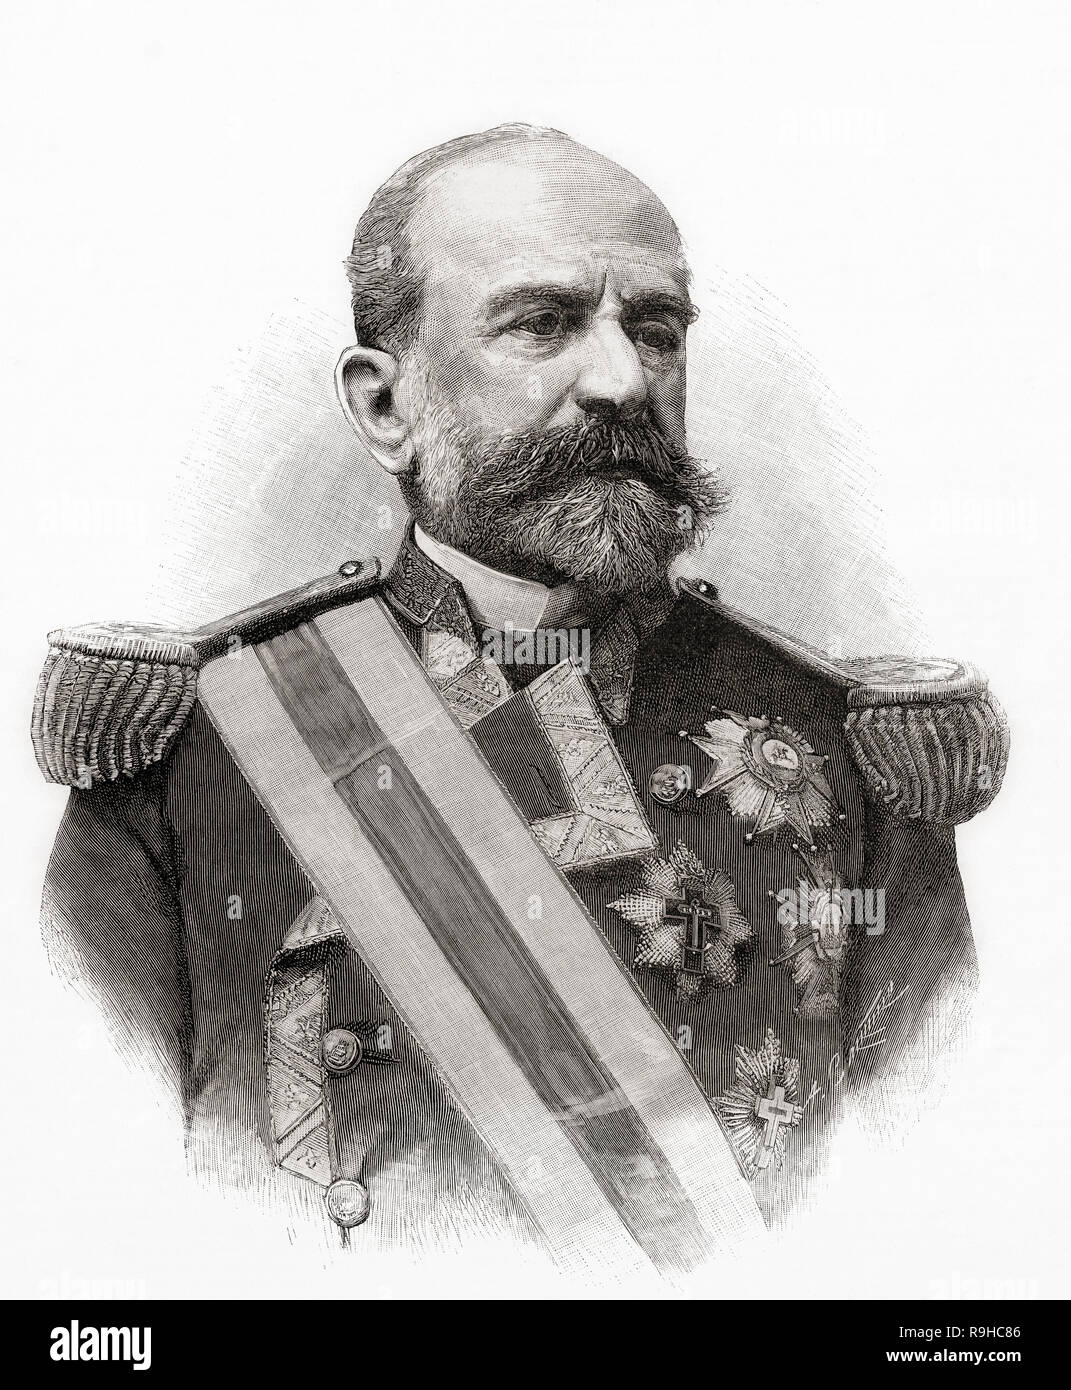 Excelentísimo Señor Don Florencio y Montojo Trillo, 1824 - 1896. Lo spagnolo ufficiale militare, marine e politico. Da La Ilustracion Española y Americana, pubblicato nel 1892. Foto Stock